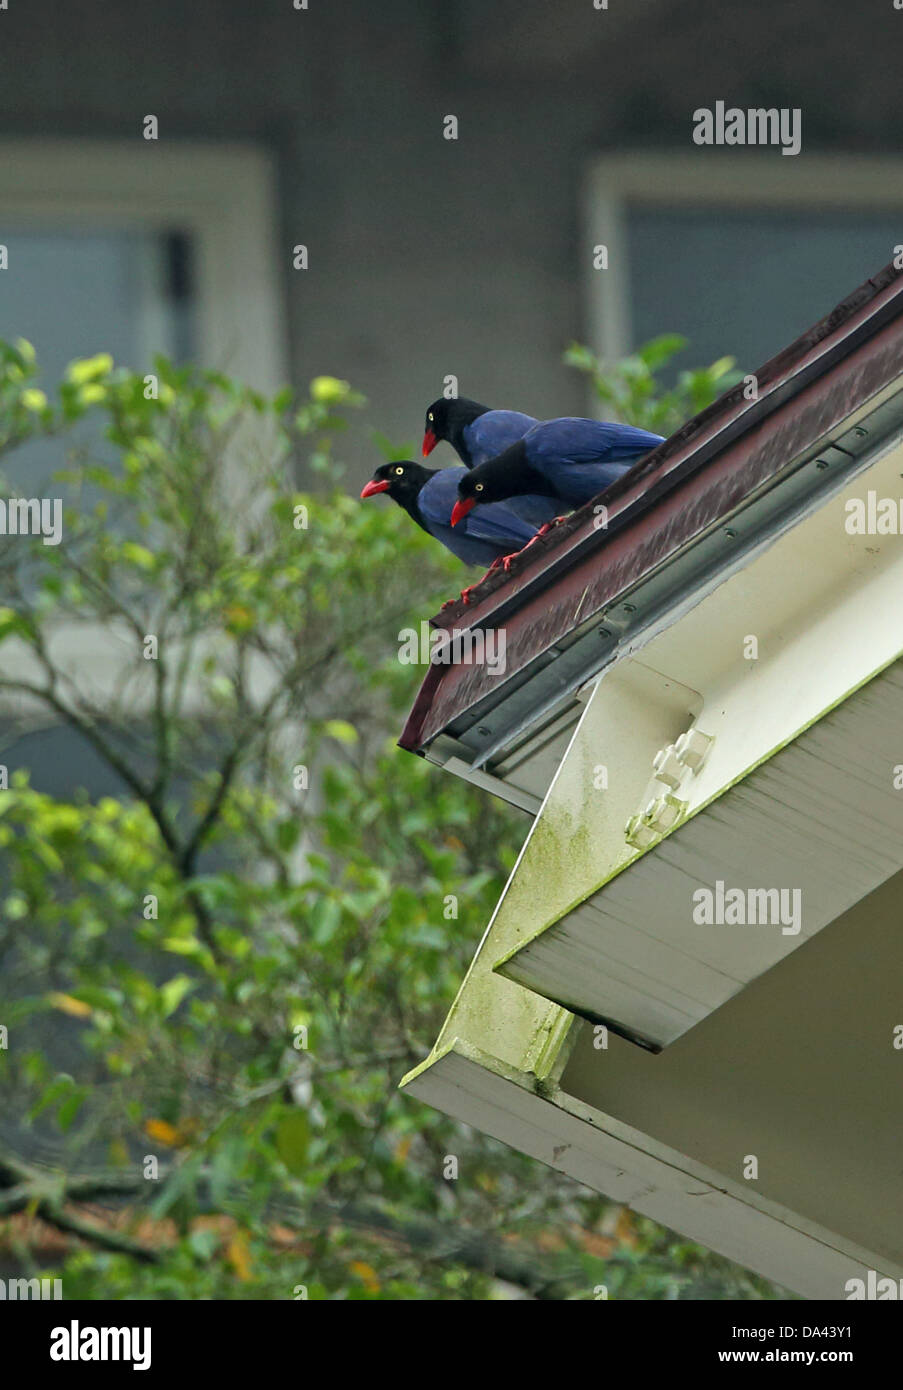 Taiwan Gazza blu (Urocissa caerulea) tre adulti, appollaiato sul tetto urbano durante le precipitazioni, Taiwan, Aprile Foto Stock